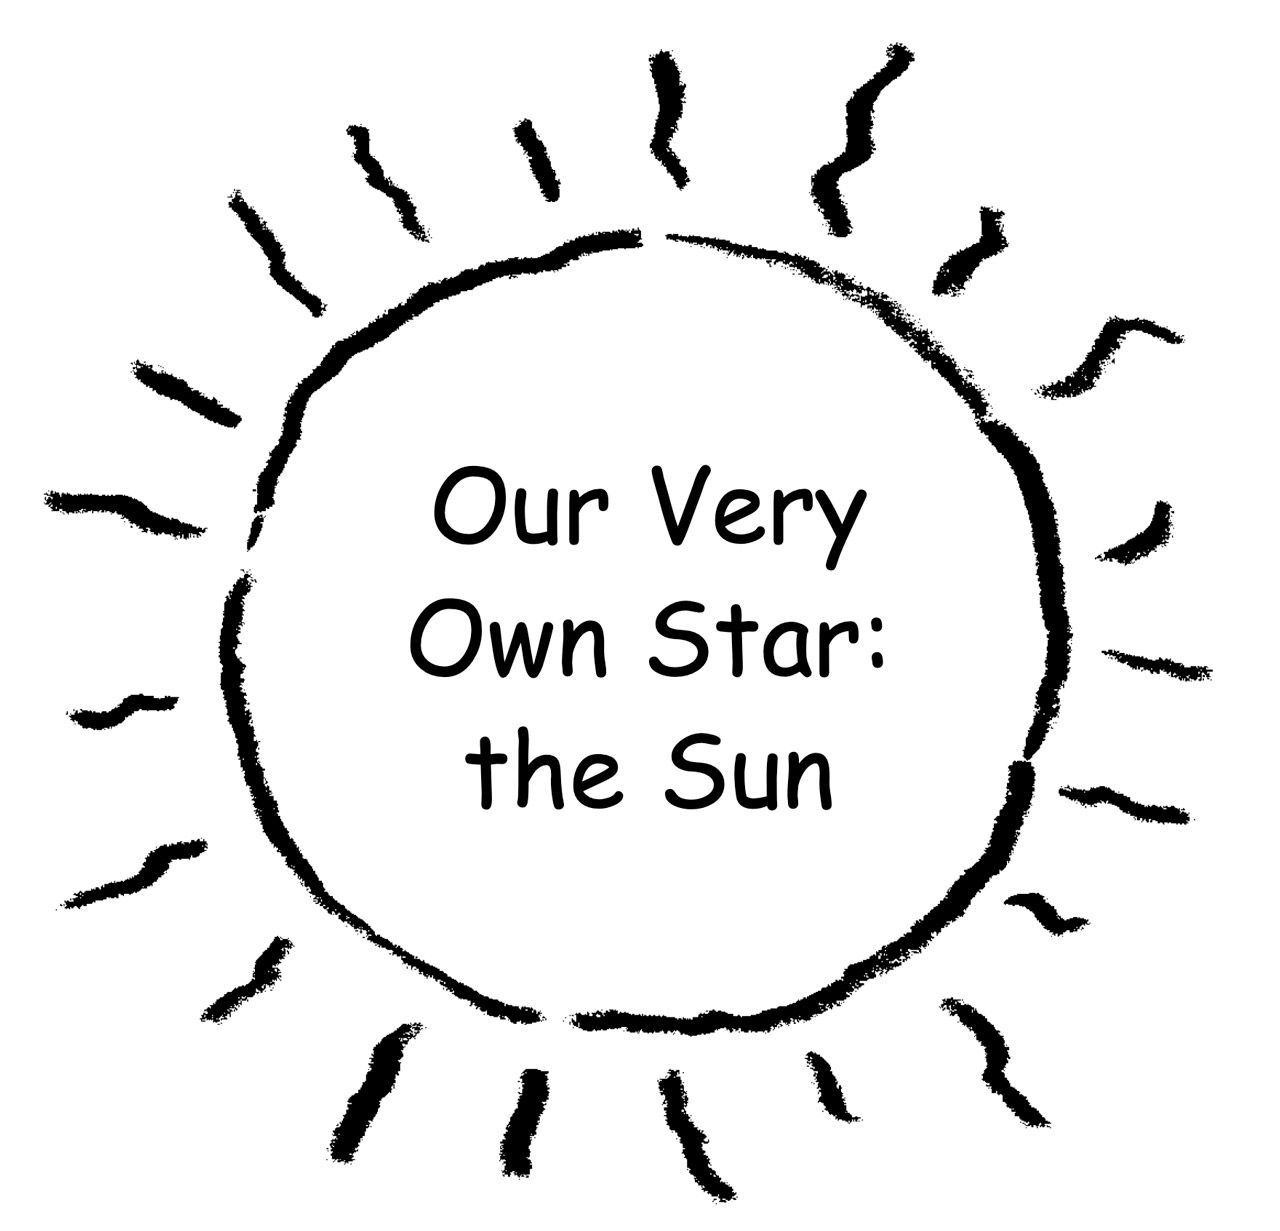 Un dibujo simple de un gran Sol delineado en negro, con un fondo blanco. Los rayos del Sol son líneas onduladas. El título del libro, “Nuestra propia estrella: el Sol”, está escrito en letras negras en el centro del Sol.